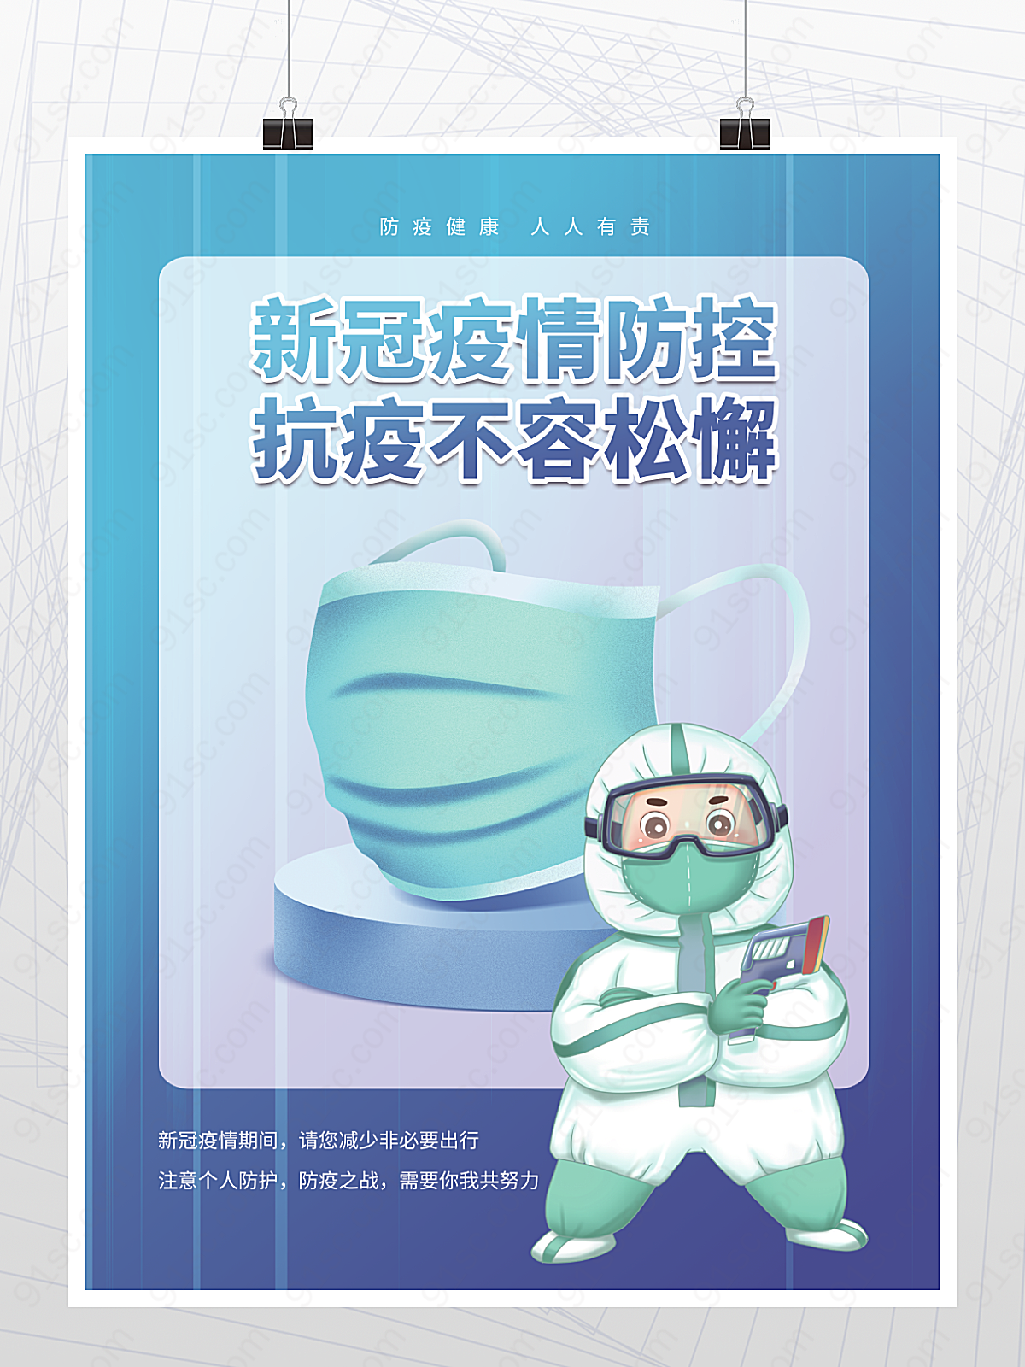 新冠疫情防控疫情管理海报口罩蓝色背景